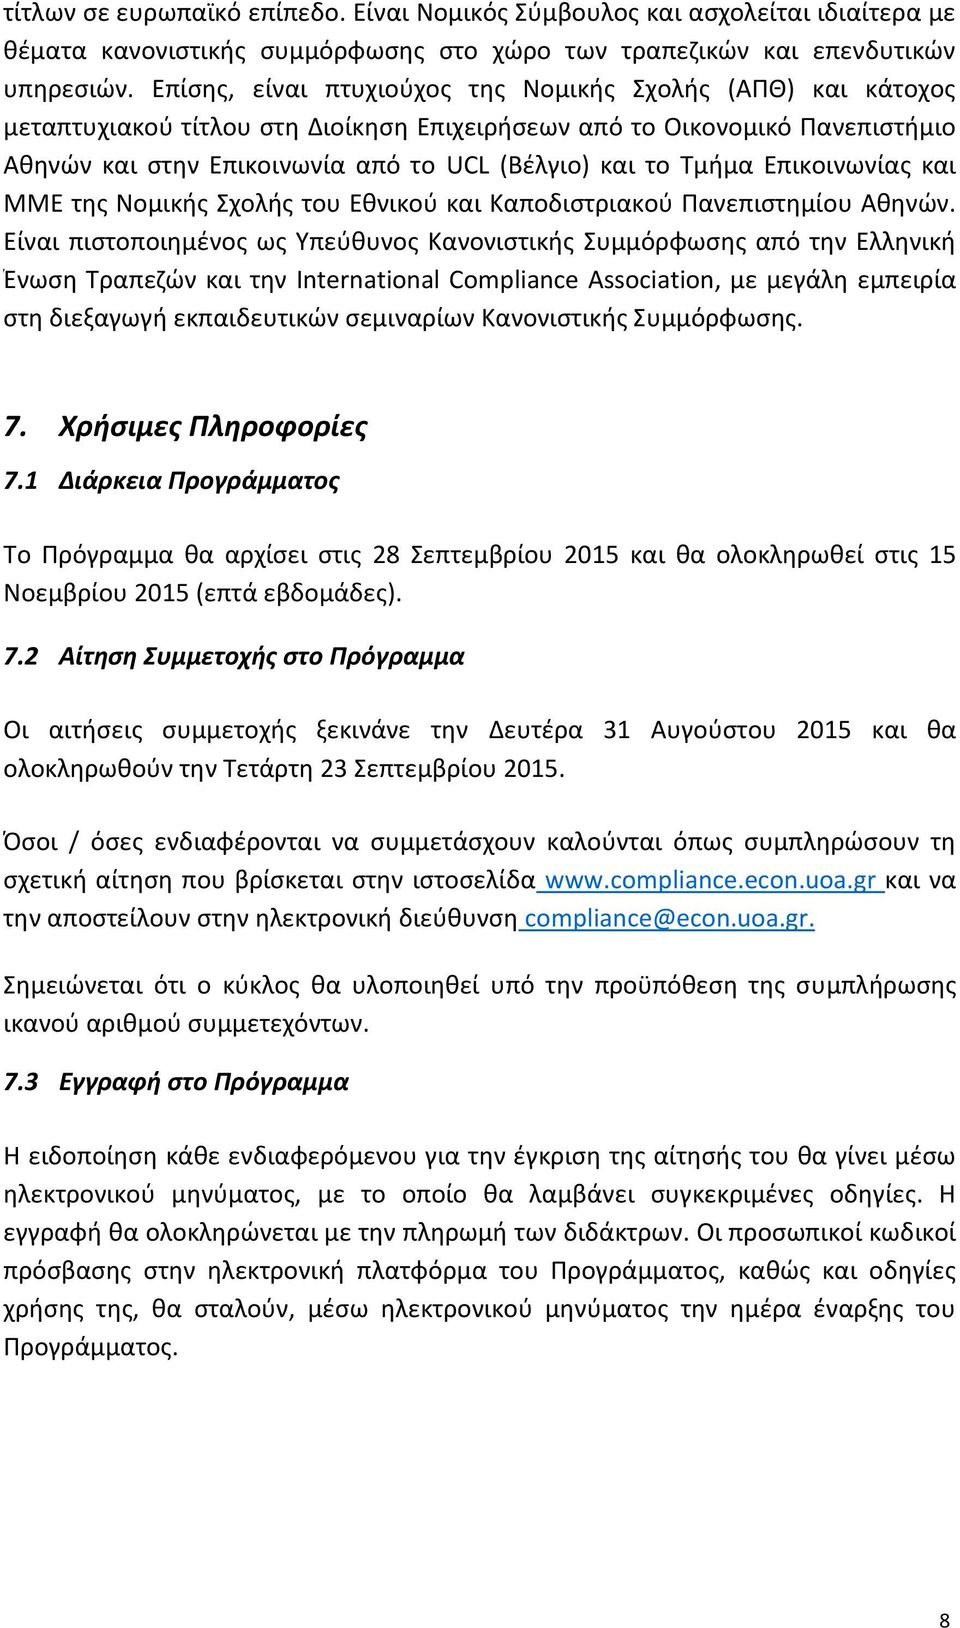 Τμήμα Επικοινωνίας και ΜΜΕ της Νομικής Σχολής του Εθνικού και Καποδιστριακού Πανεπιστημίου Αθηνών.